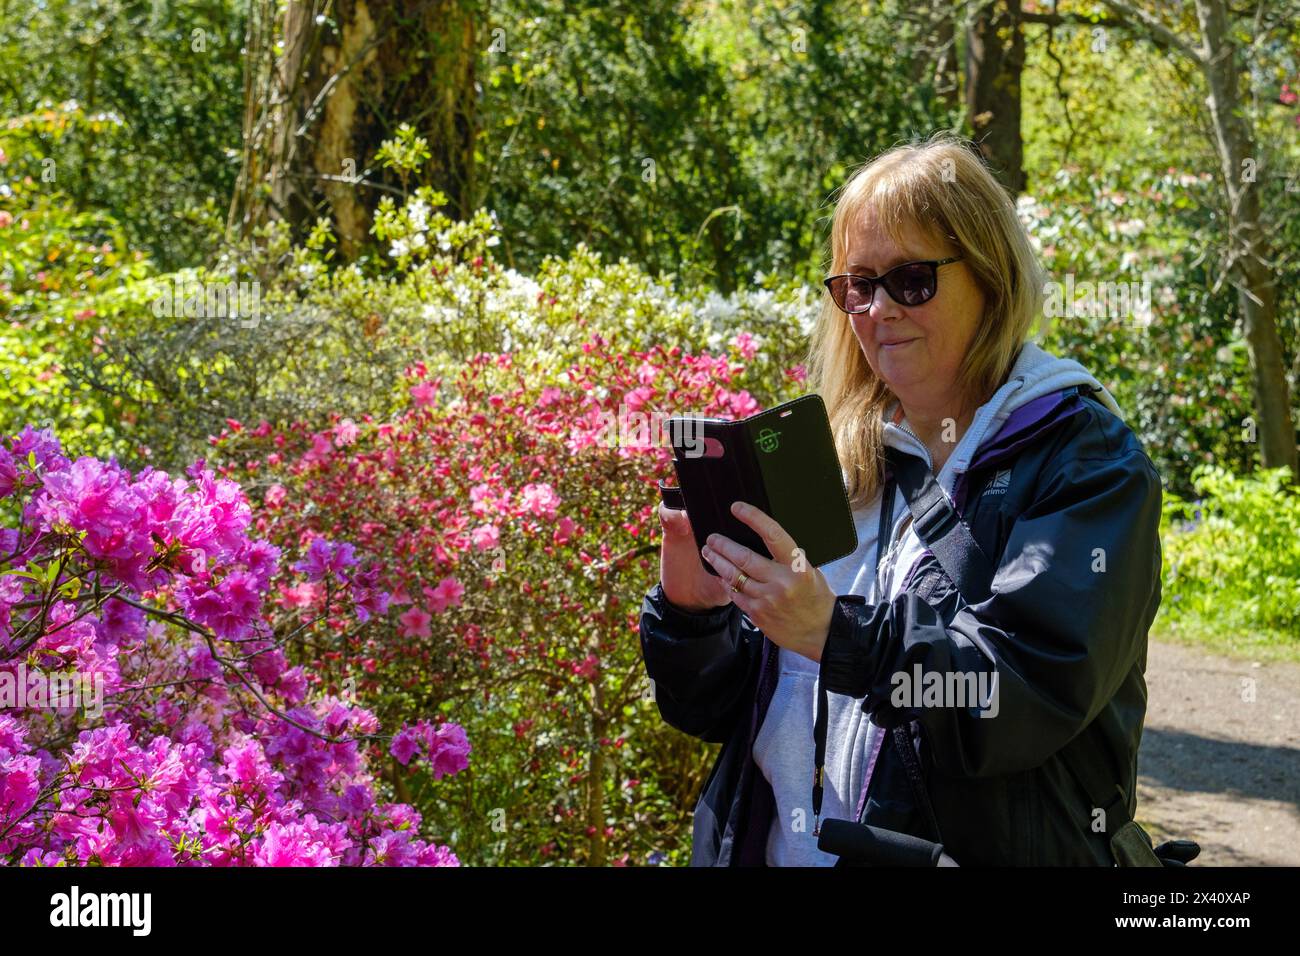 Donna che identifica piante e fiori e scatta fotografie, sul suo cellulare, Regno Unito Foto Stock